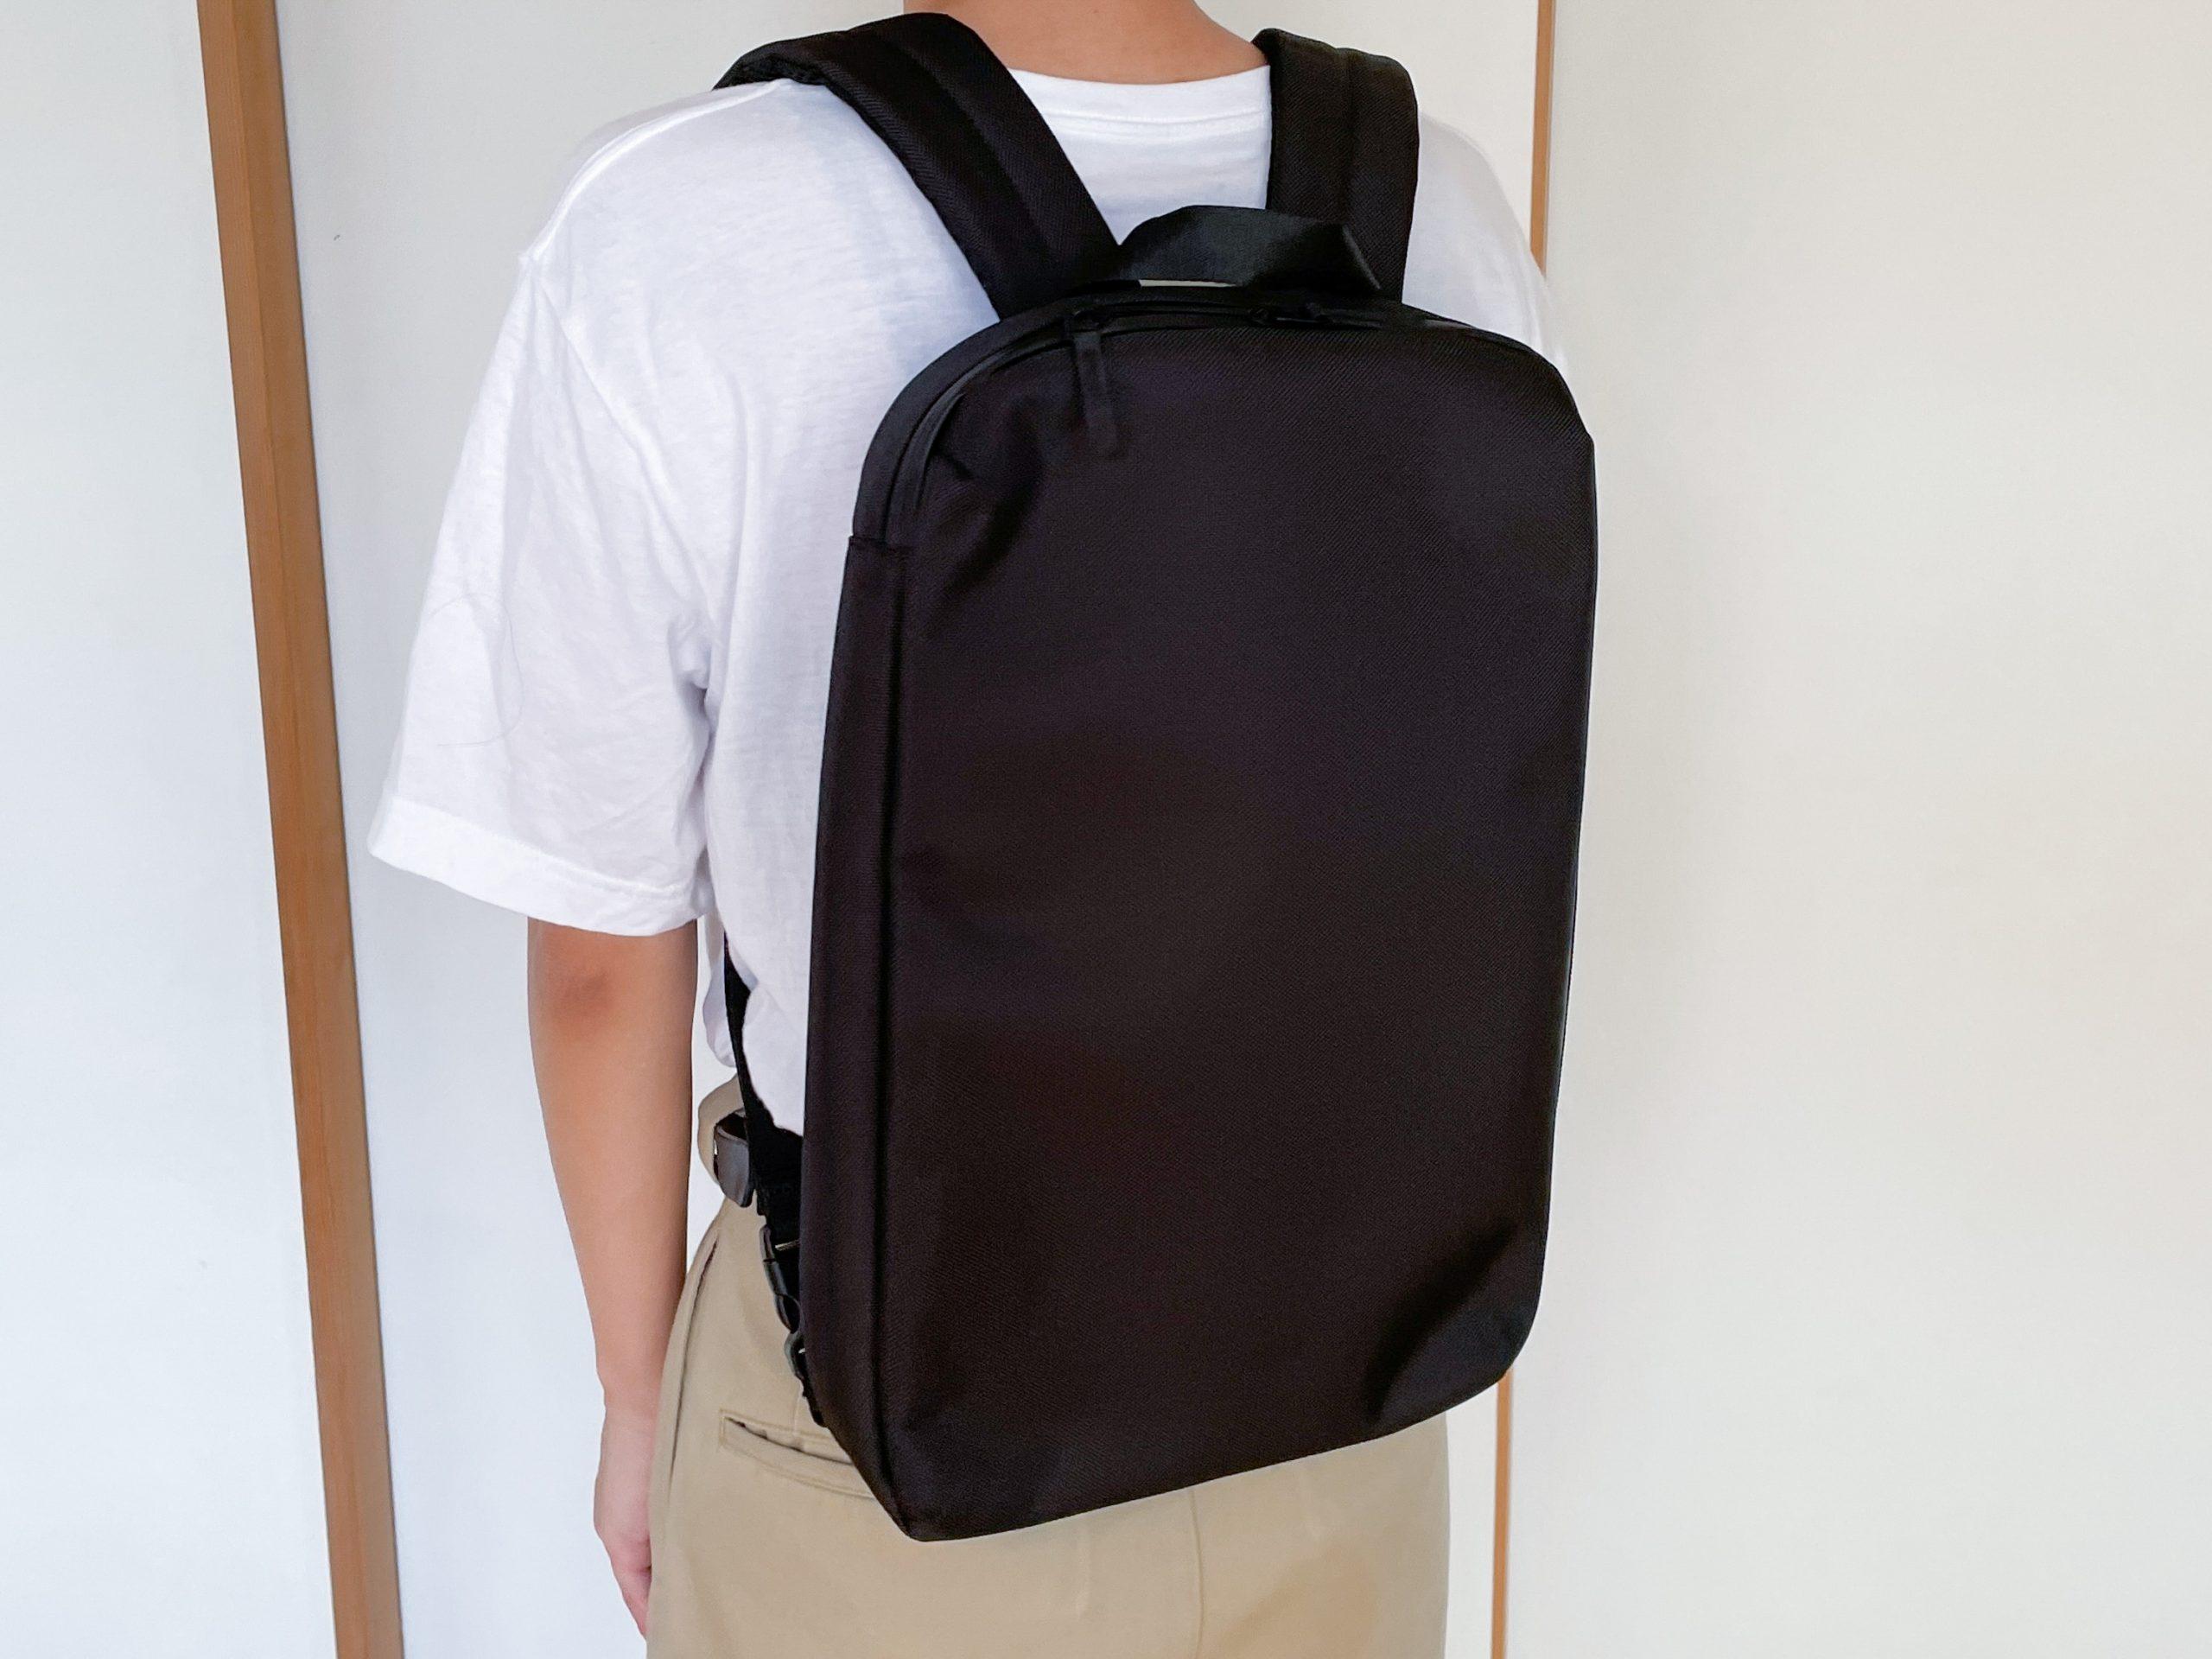 ユニクロの3WAYバッグ、「PCを持ち運びたいけど大きなバッグは